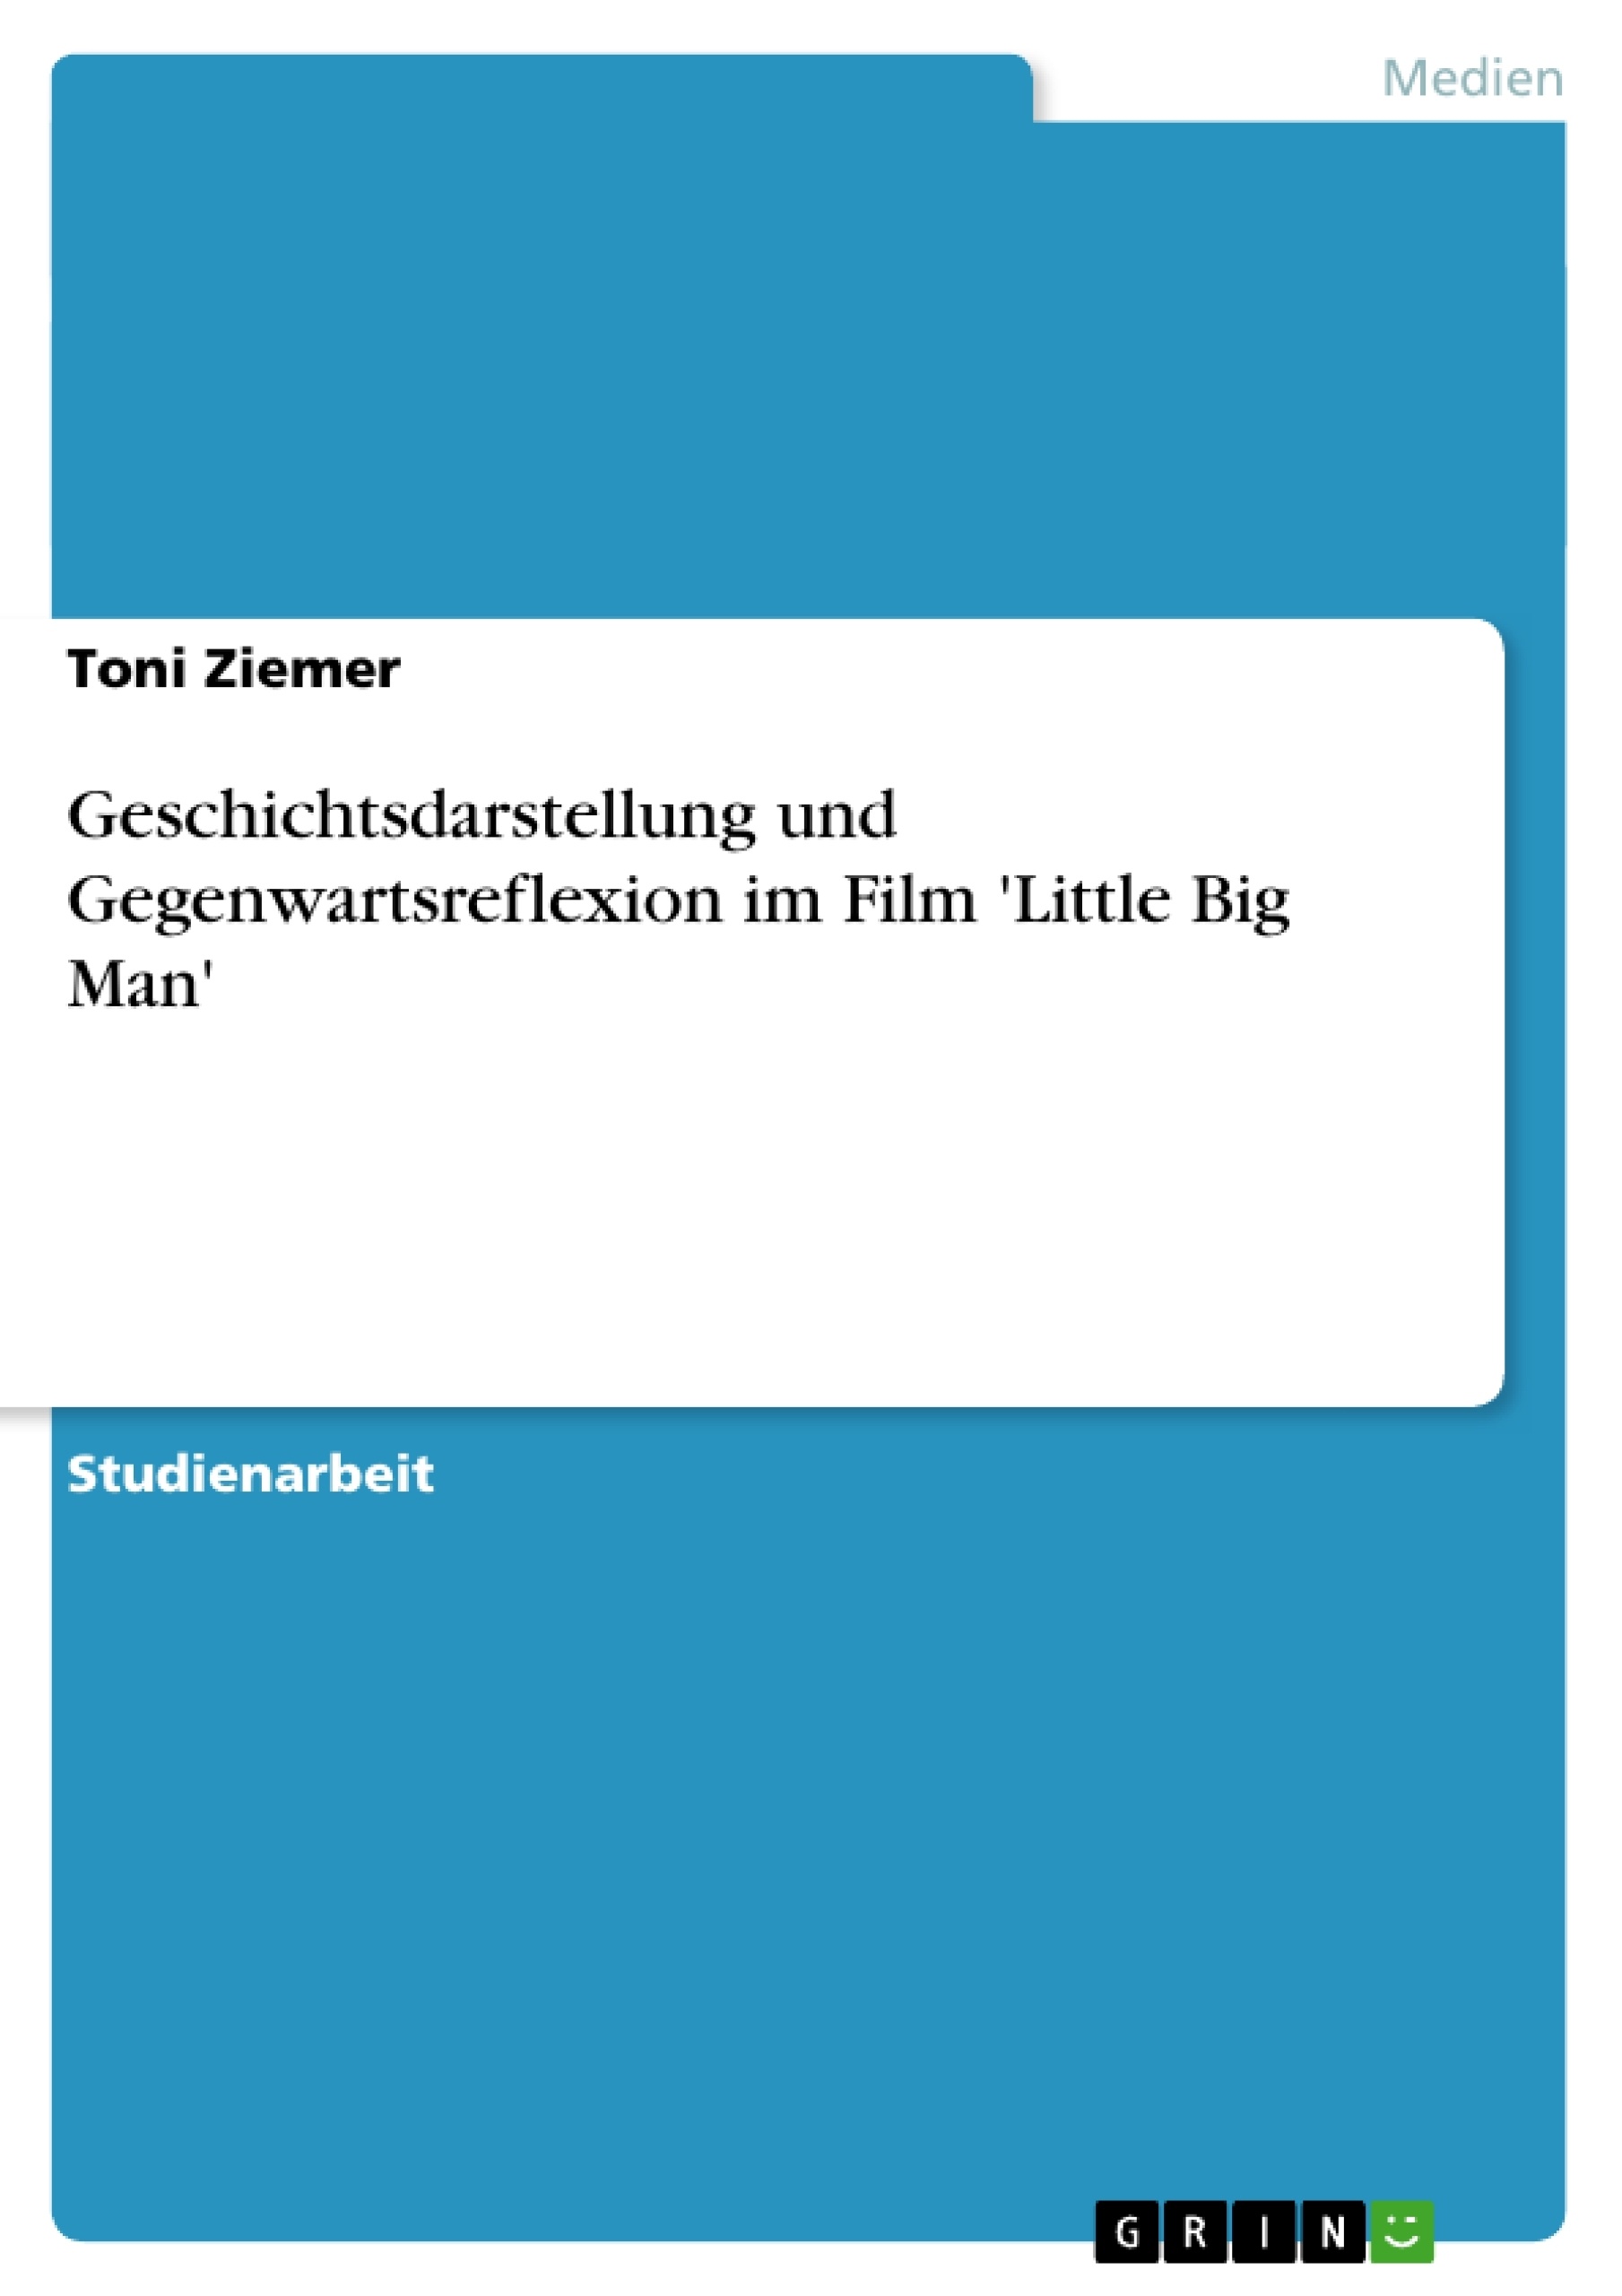 Título: Geschichtsdarstellung und Gegenwartsreflexion im Film 'Little Big Man'